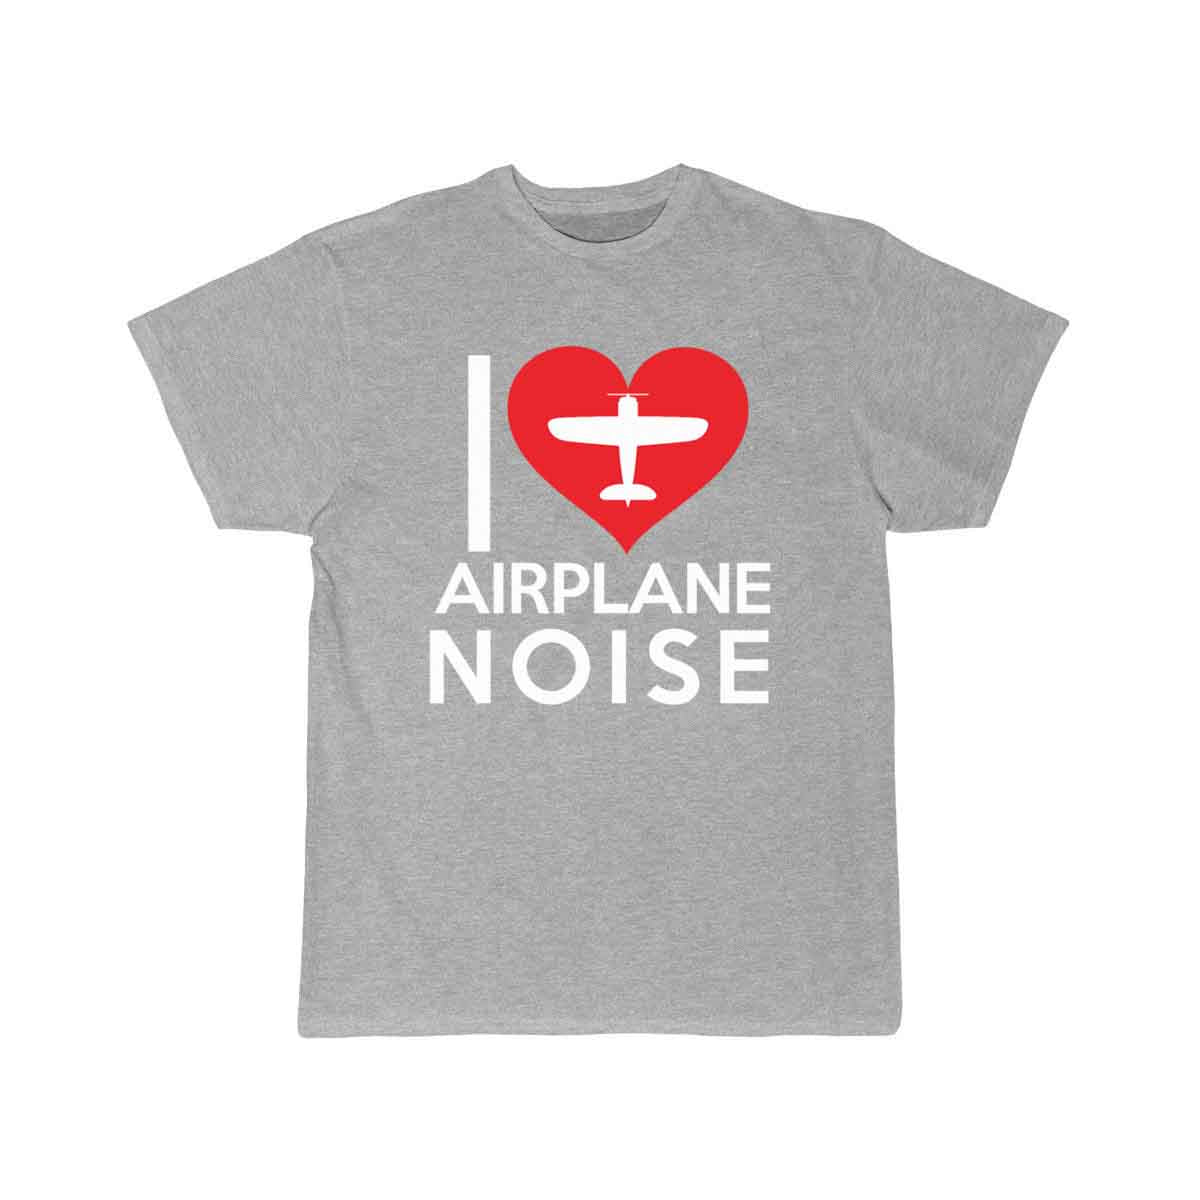 I love airplane noise T SHIRT THE AV8R